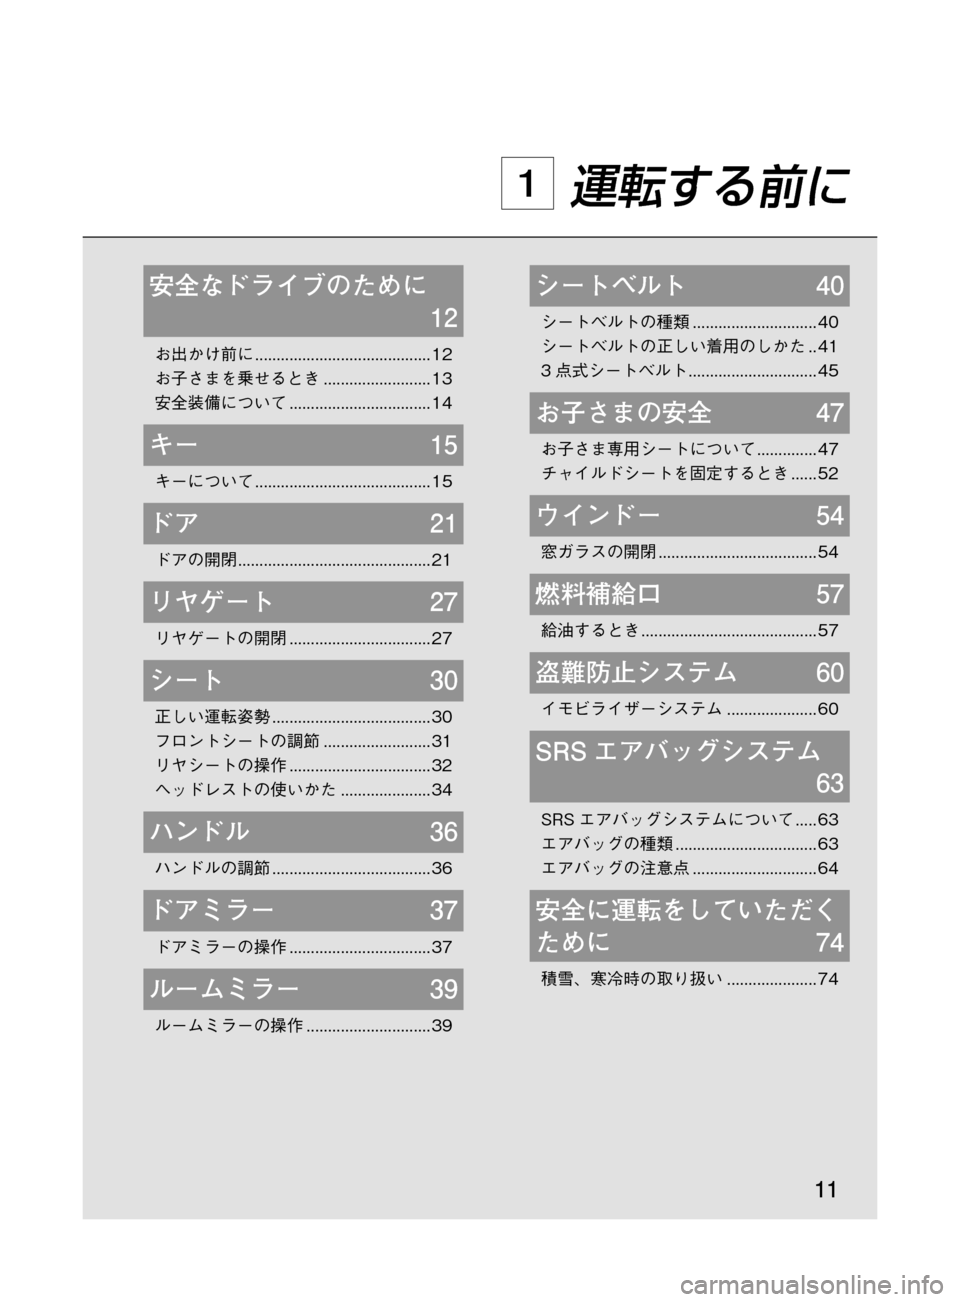 MAZDA MODEL DEMIO 2011  デミオ｜取扱説明書 (in Japanese) ��
��P�S�N��/�P���% 